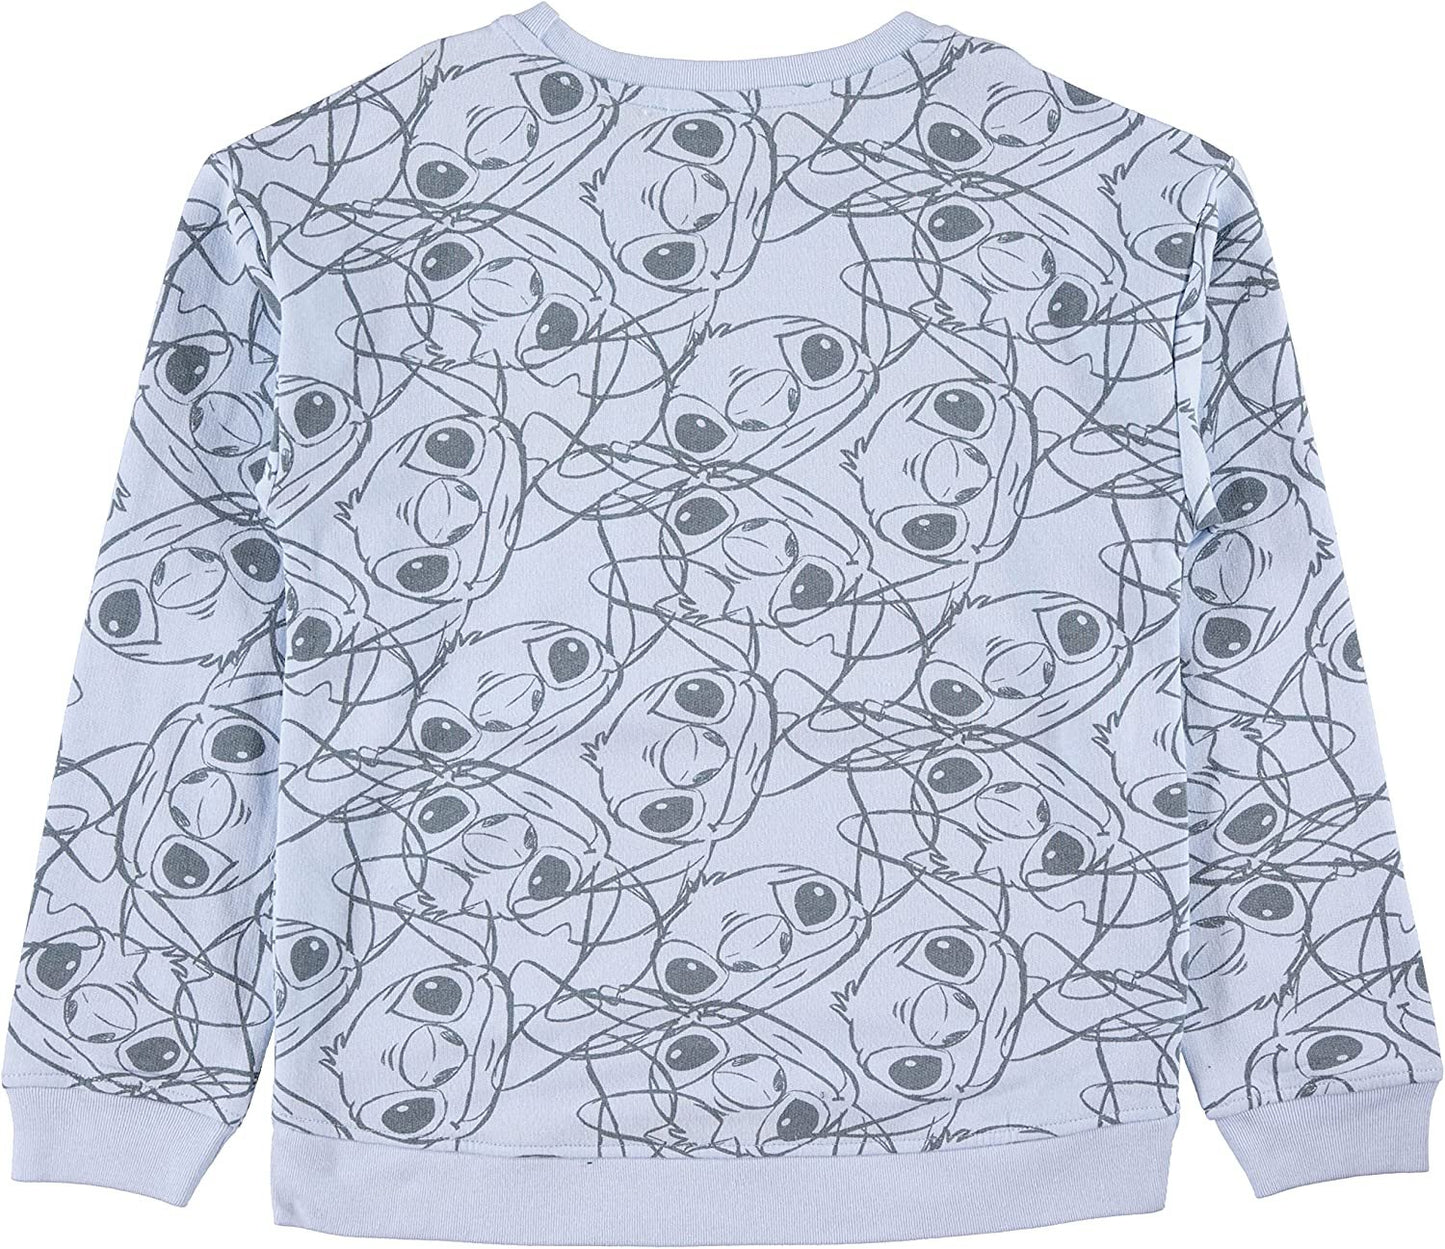 Lilo & Stitch Girls Sweatshirt -Jumbo Print and Embroidery Disney's Stitch Sweater- Sizes 4-16